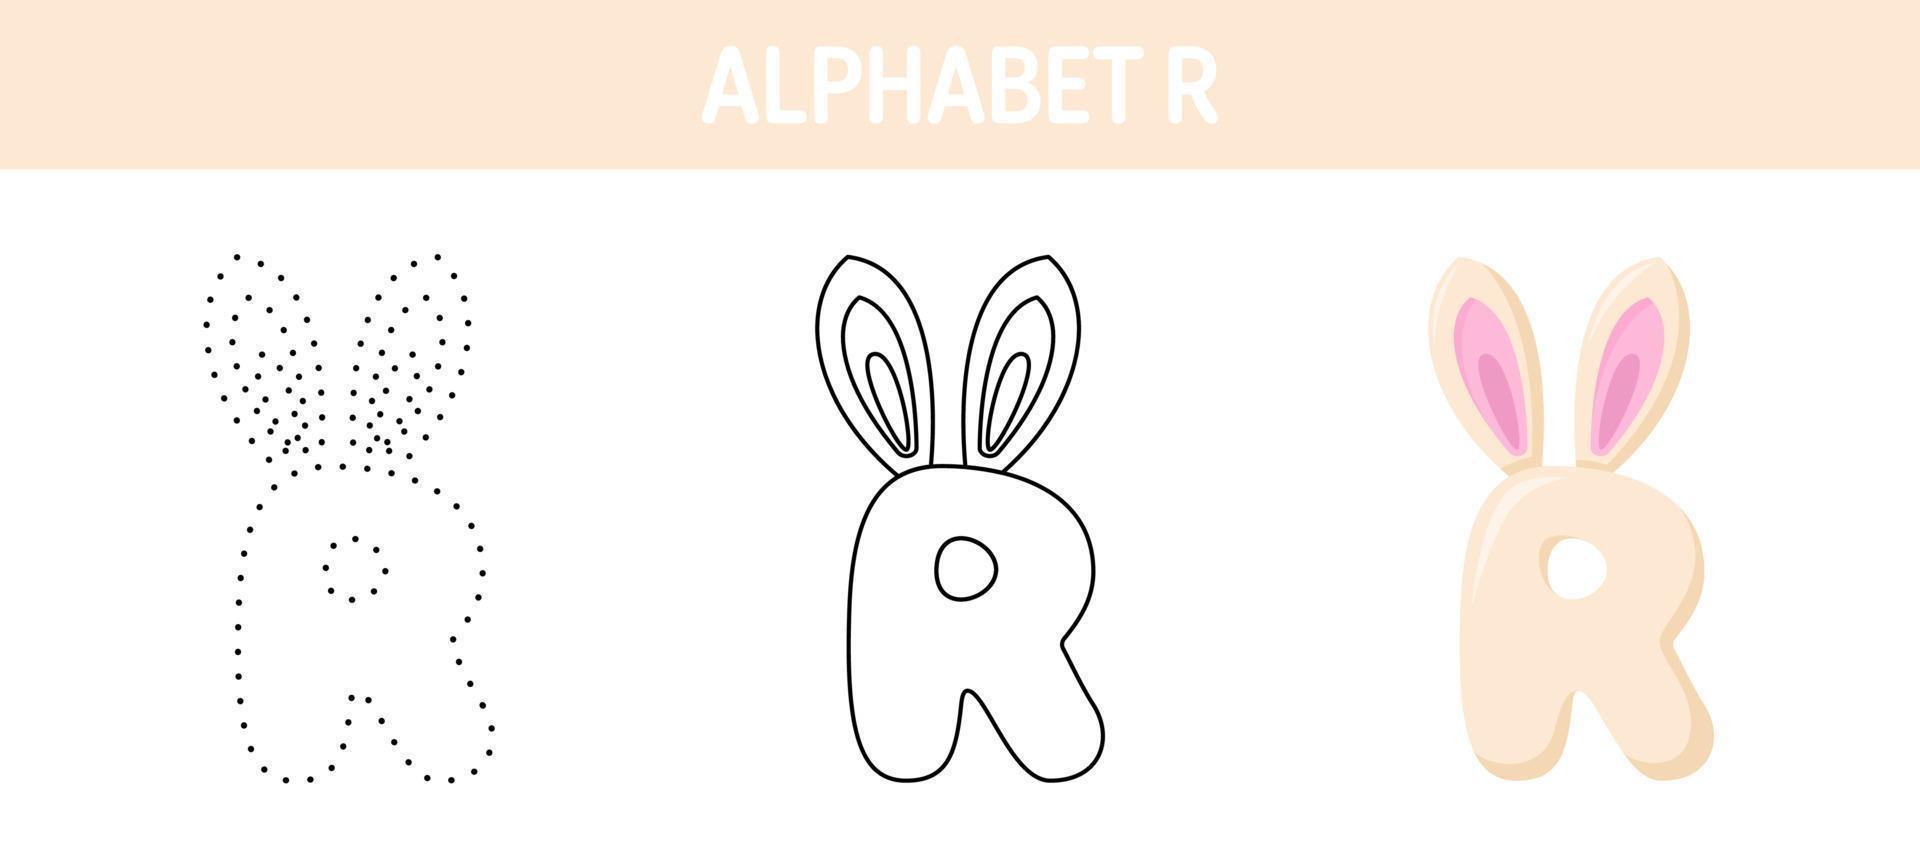 alfabeto r tracciato e colorazione foglio di lavoro per bambini vettore